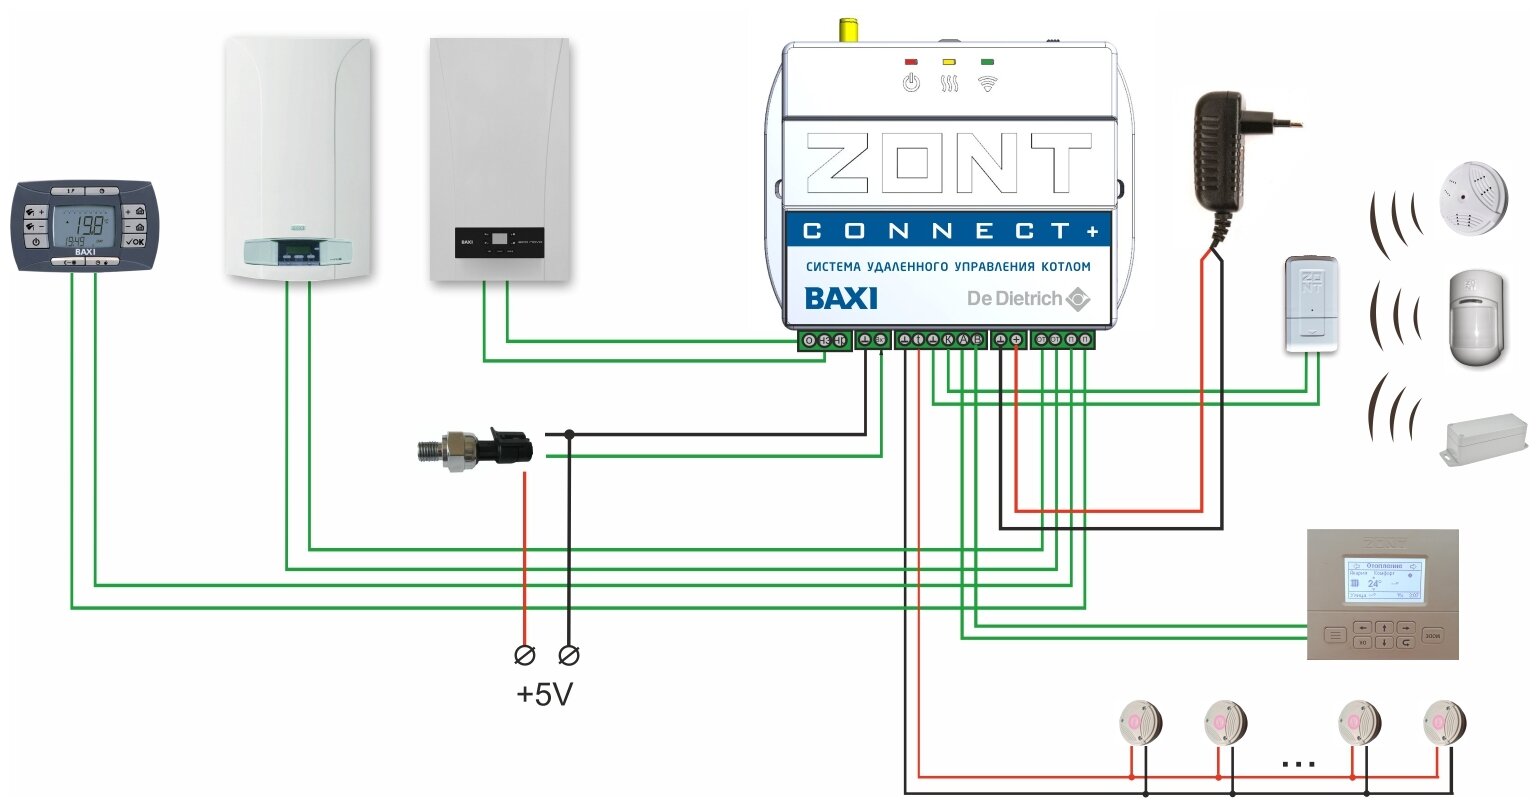 Zont котел baxi. Zont connect Baxi. Zont connect+ GSM термостат для газовых котлов Baxi. Система удаленного управления котлом Zont connect+. GSM термостат Zont Lite 737.